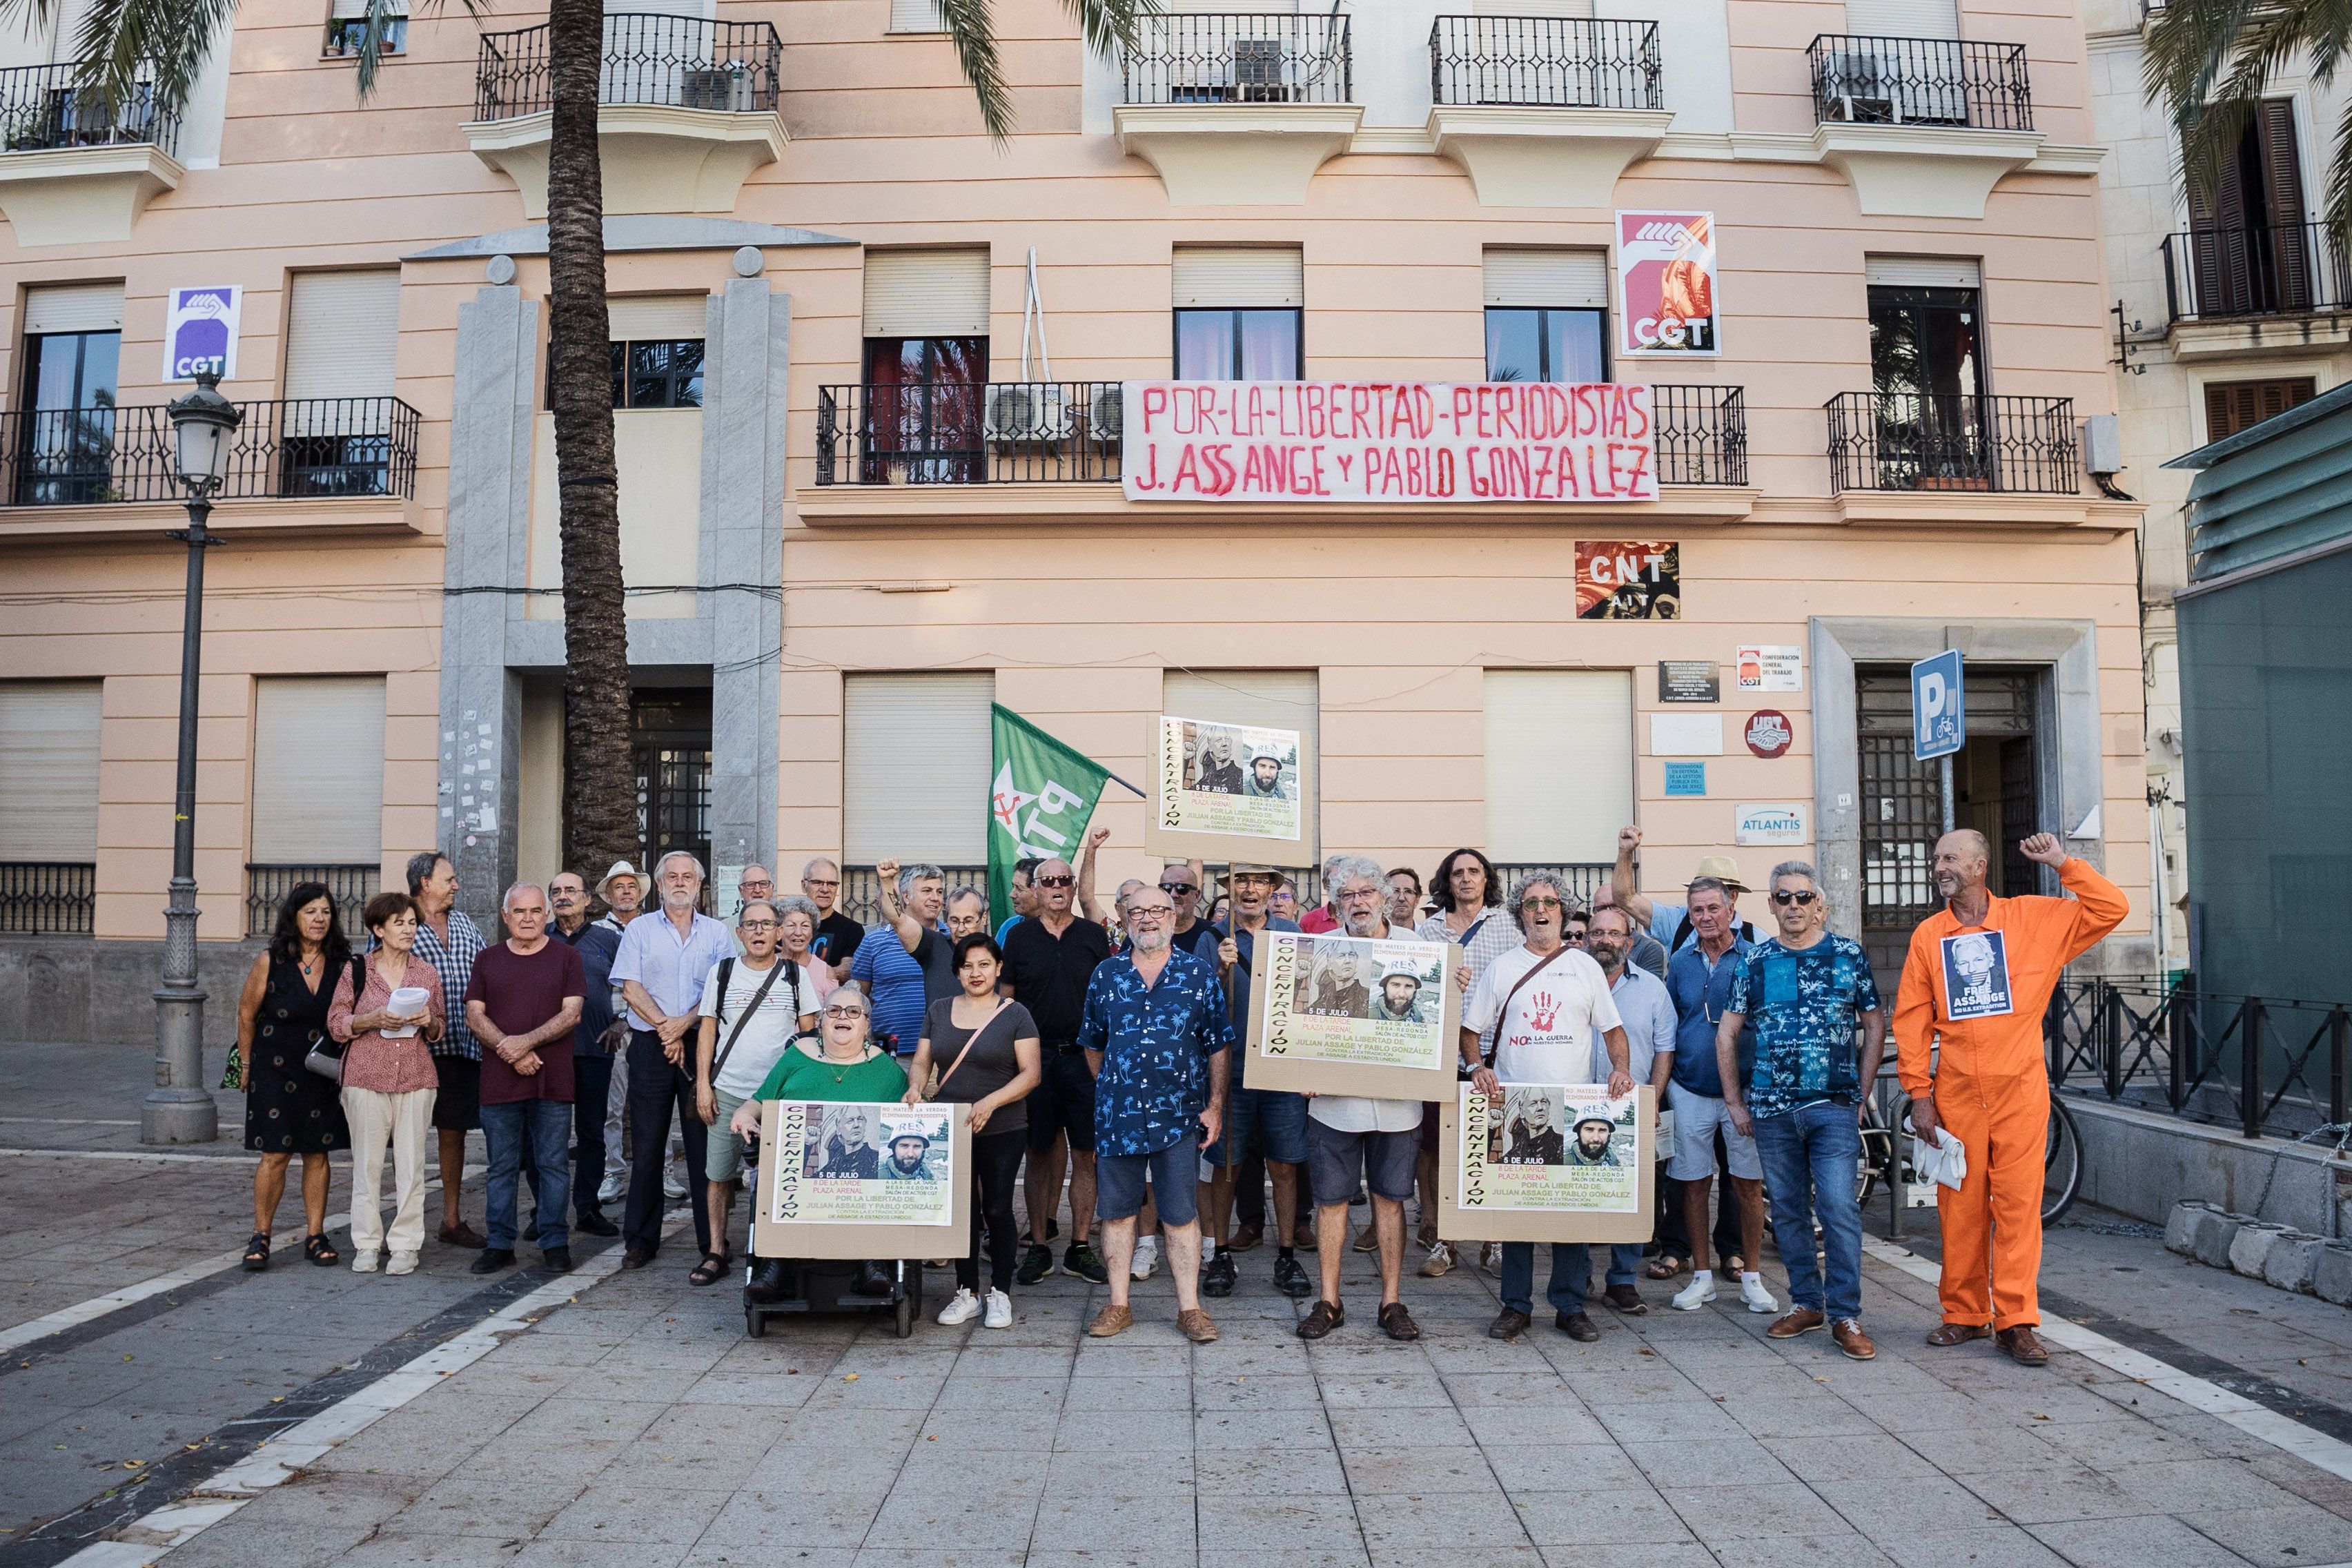 Concentración en Jerez para pedir la libertad de Julian Assange y Pablo González.